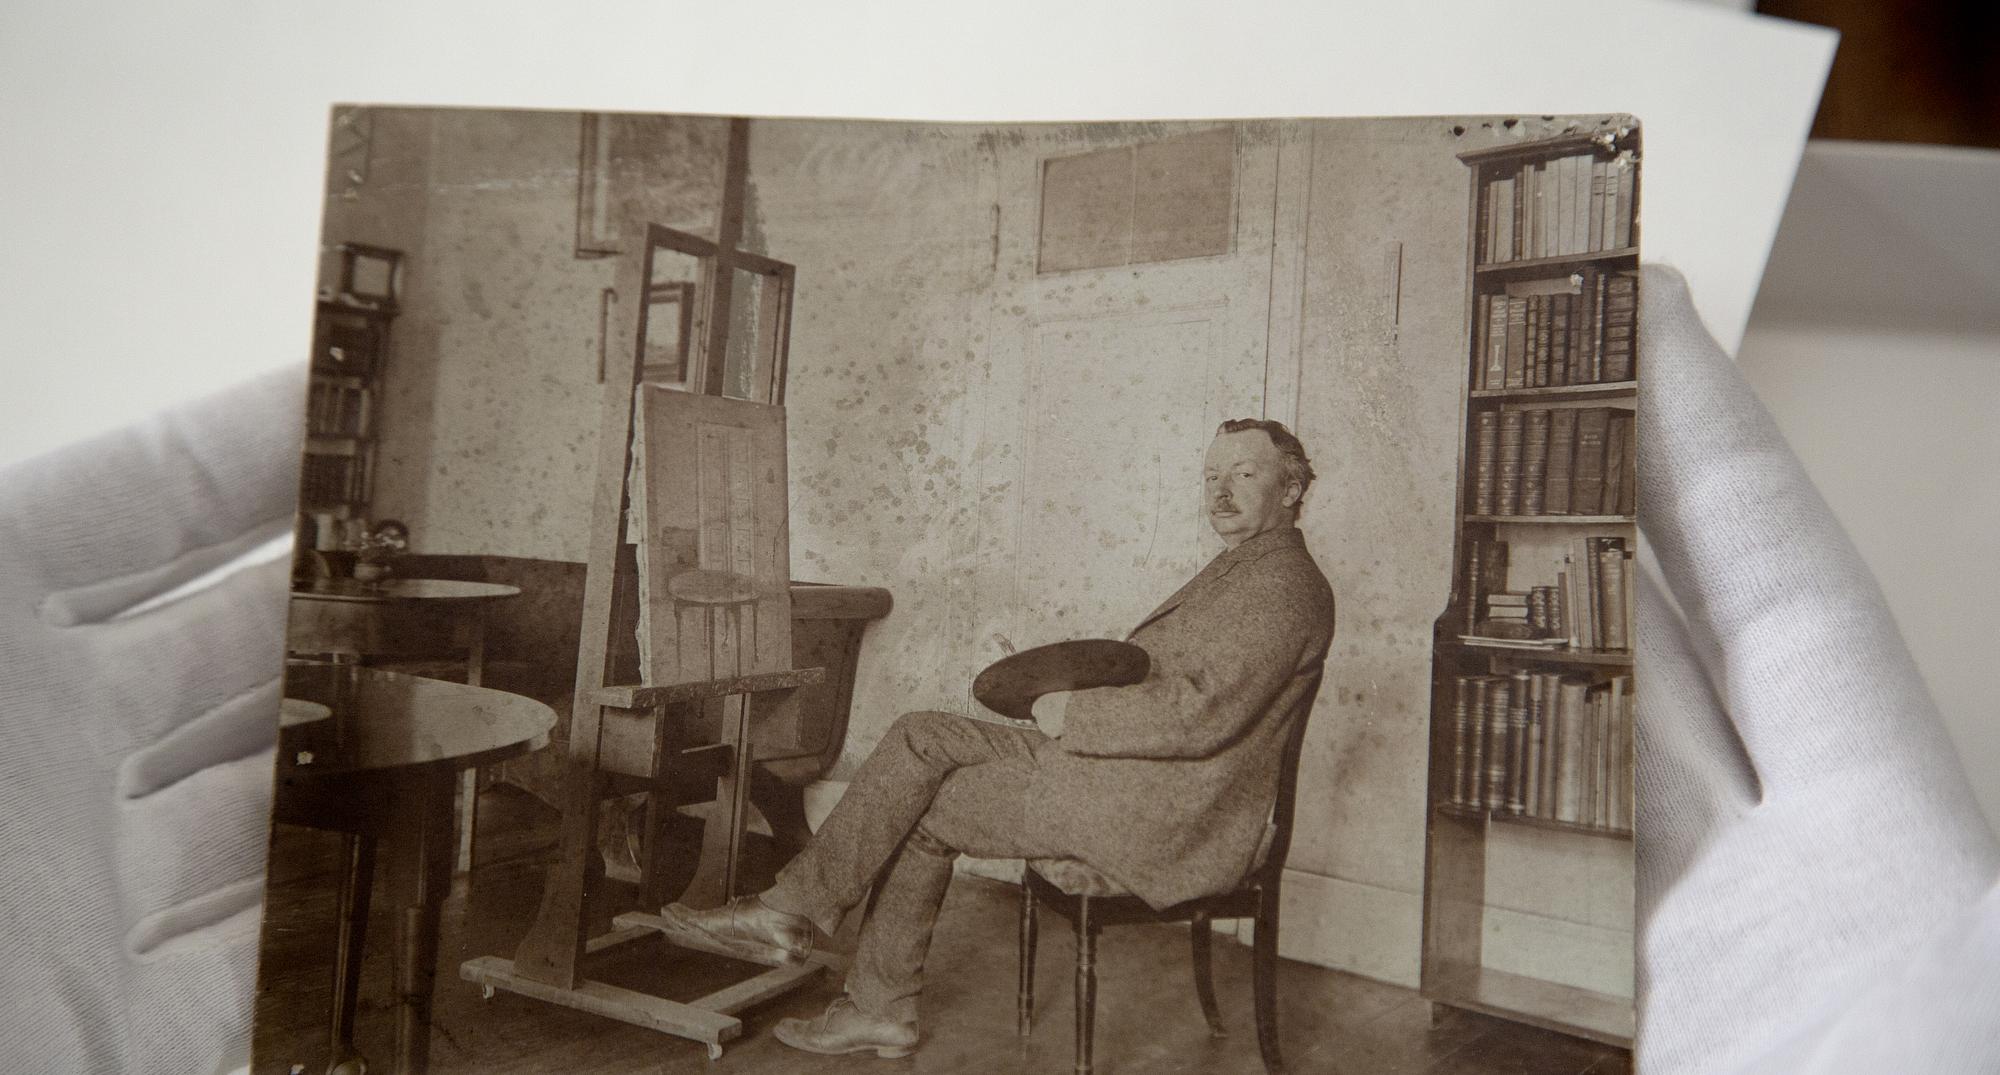 Fotografi af Vilhelm Hammershøi foran sit staffeli. Den Hirschsprungske Samlings arkiv
